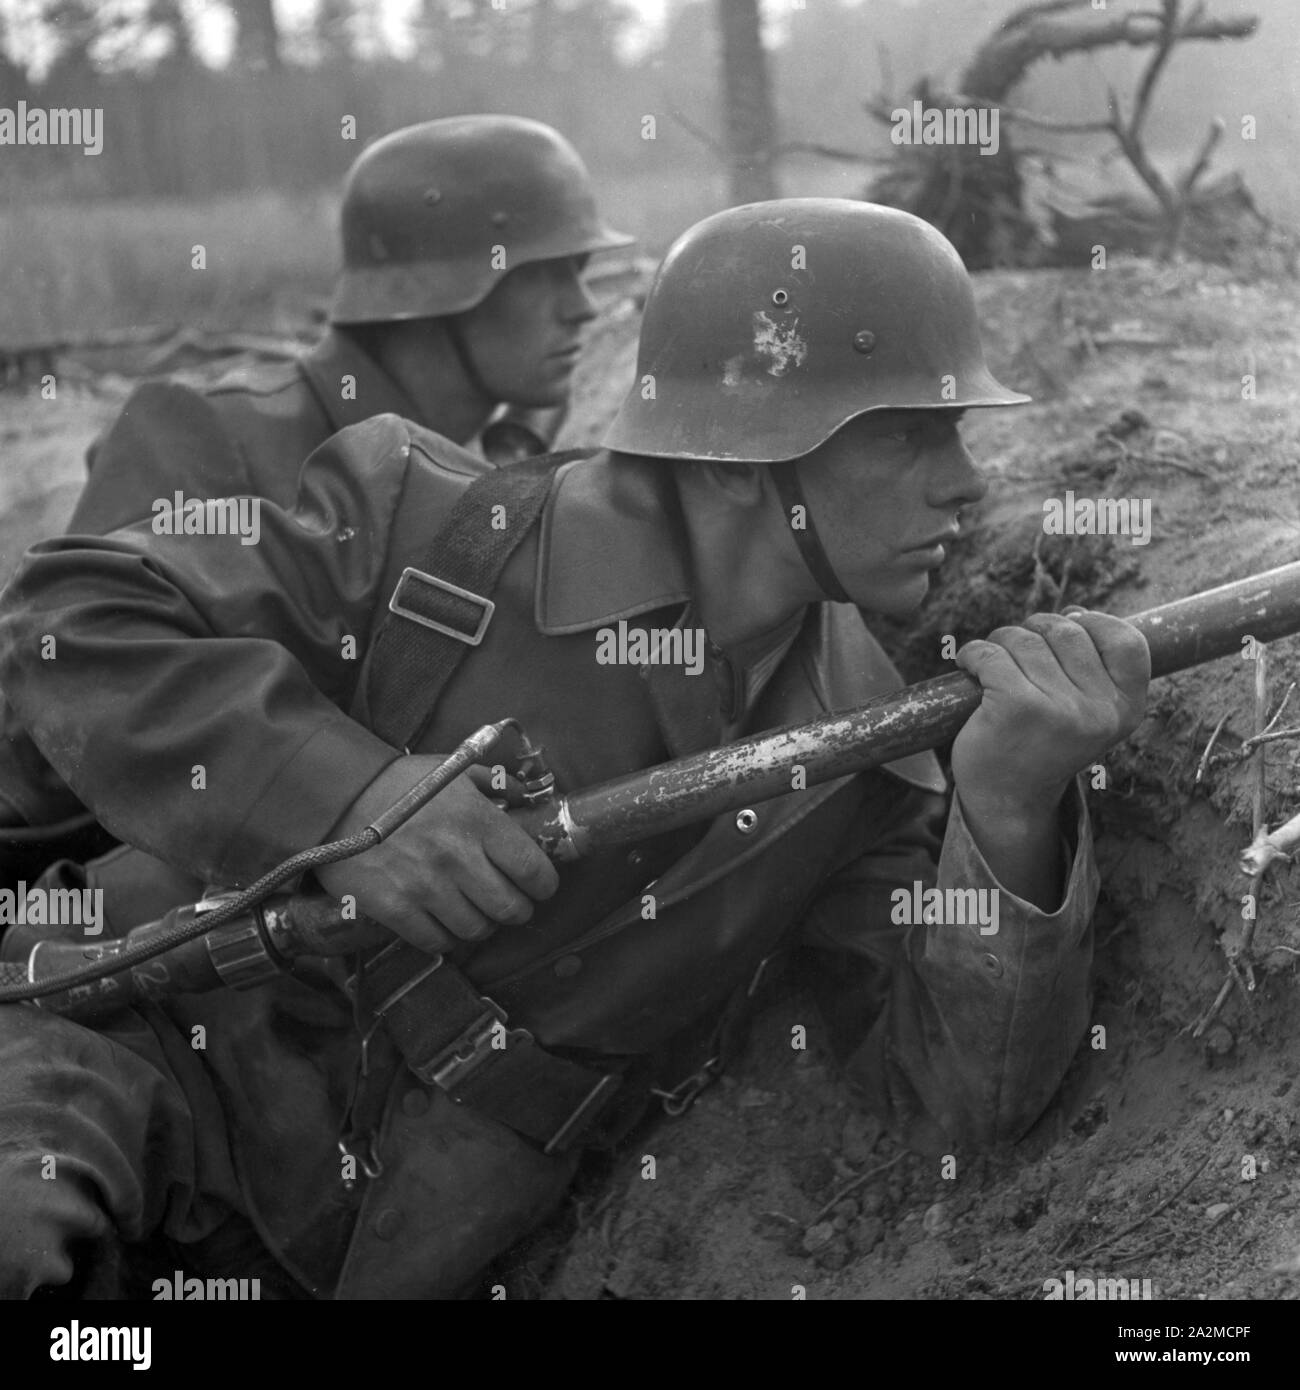 Original-Bildunterschrift: Flammenwerfer, Deutschland 1940er Jahre. Flamthrower, Germany 1940s. Stock Photo